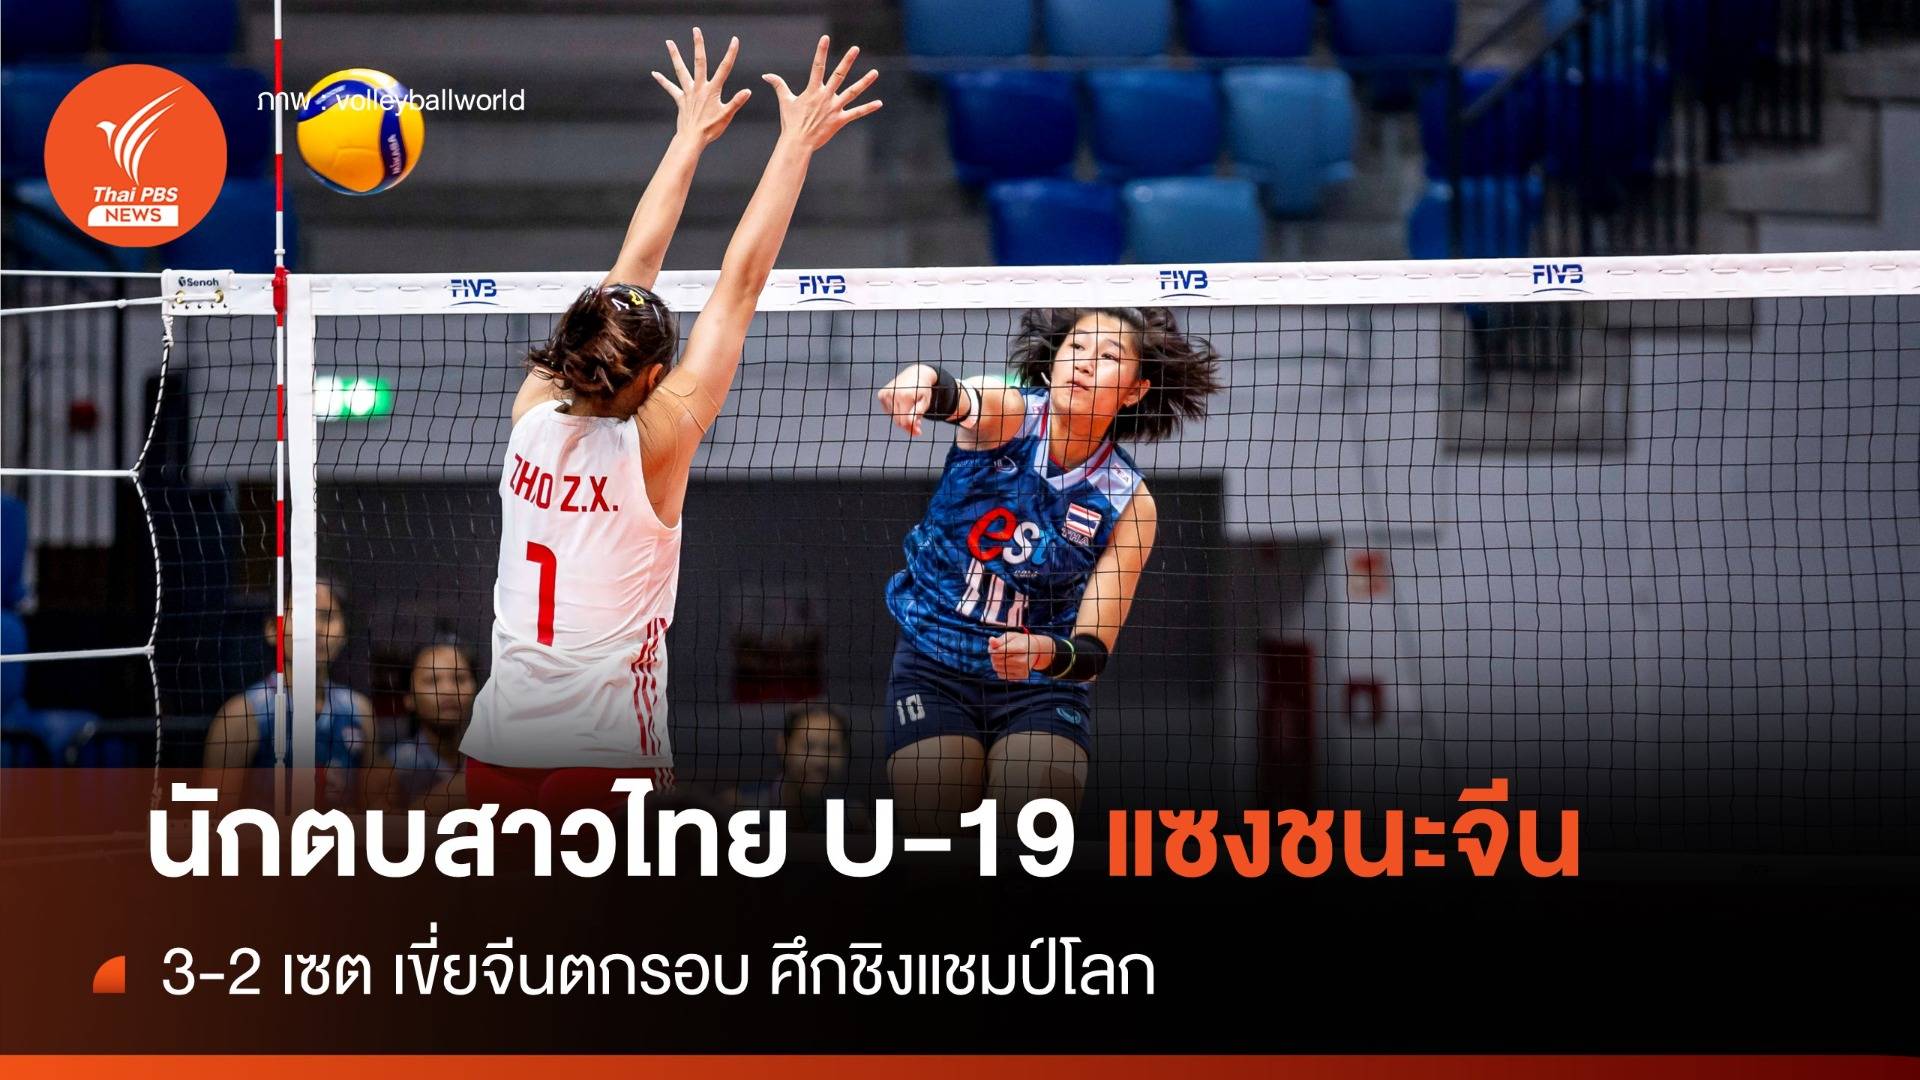 นักตบสาวไทย U-19 แซงชนะจีน 3-2 เซต เขี่ยจีนตกรอบศึกชิงแชมป์โลก